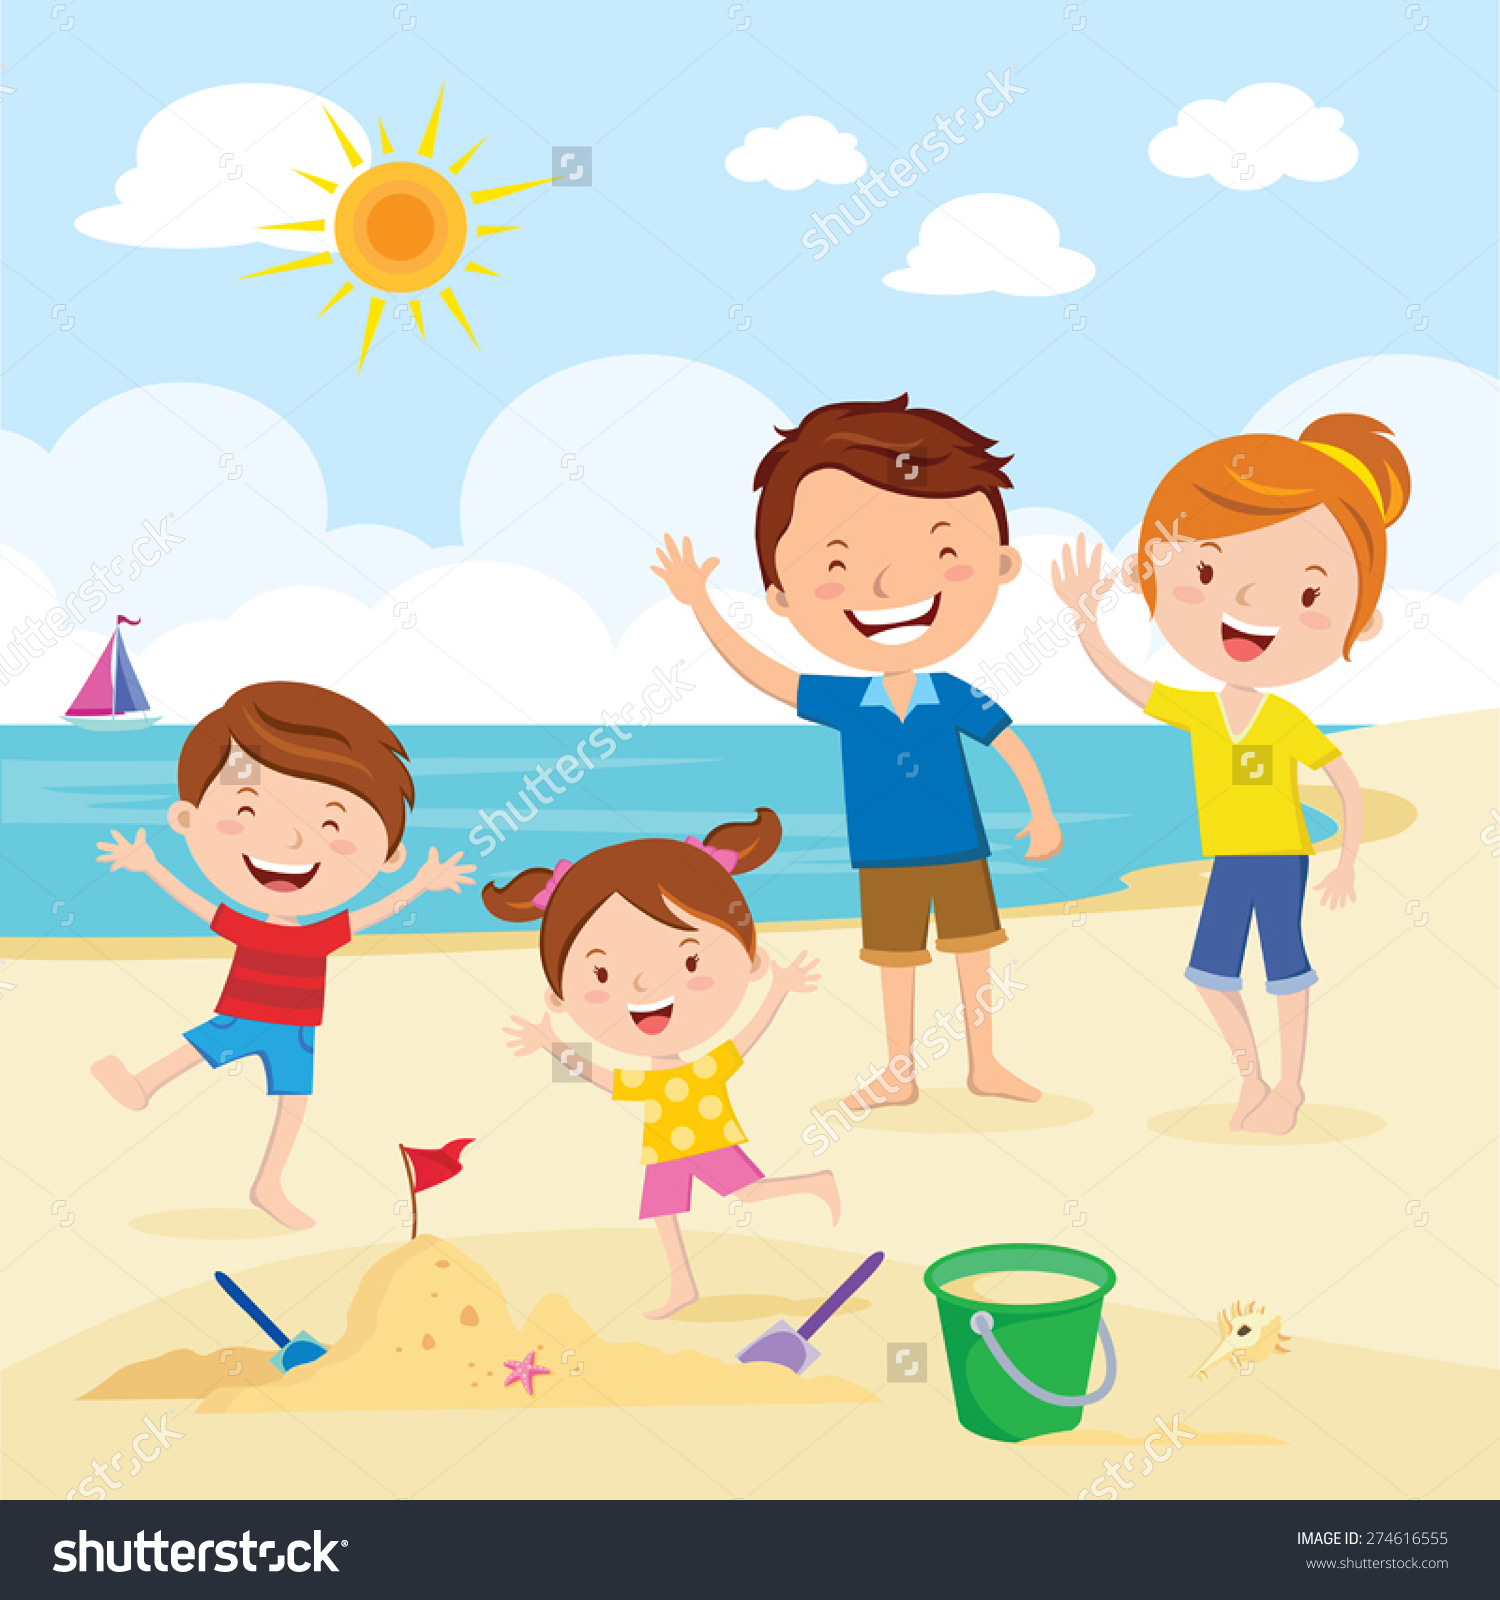 beach clipart for beach clipart download #31671